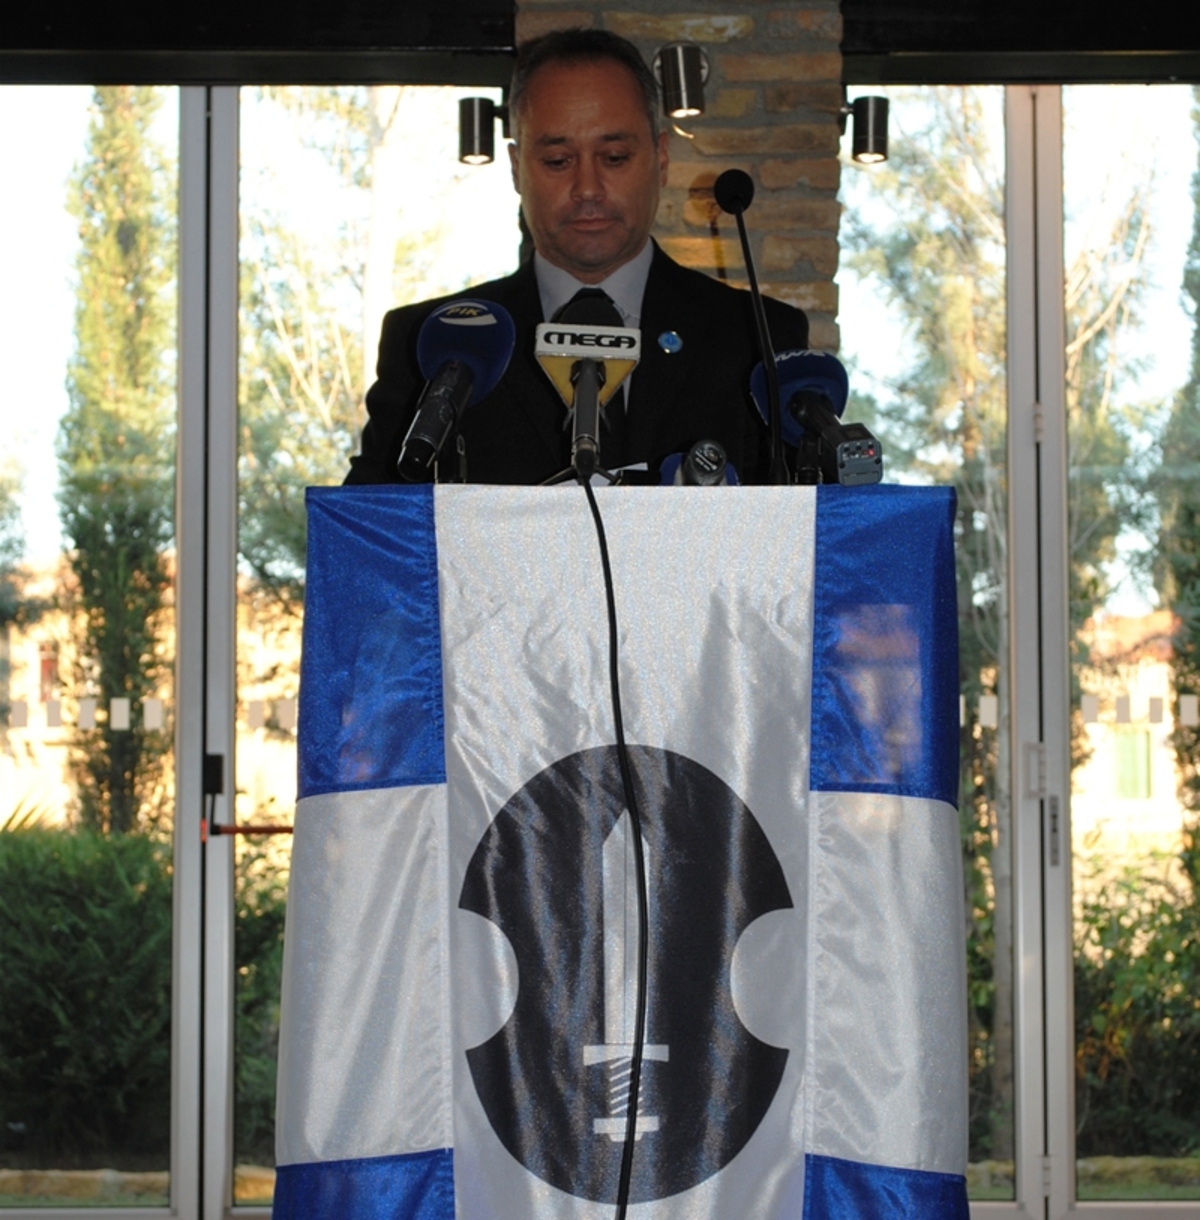 NewsIt Κύπρου: Με τον Γιώργο Χαραλάμπους στις εκλογές το Ε.ΛΑ.Μ